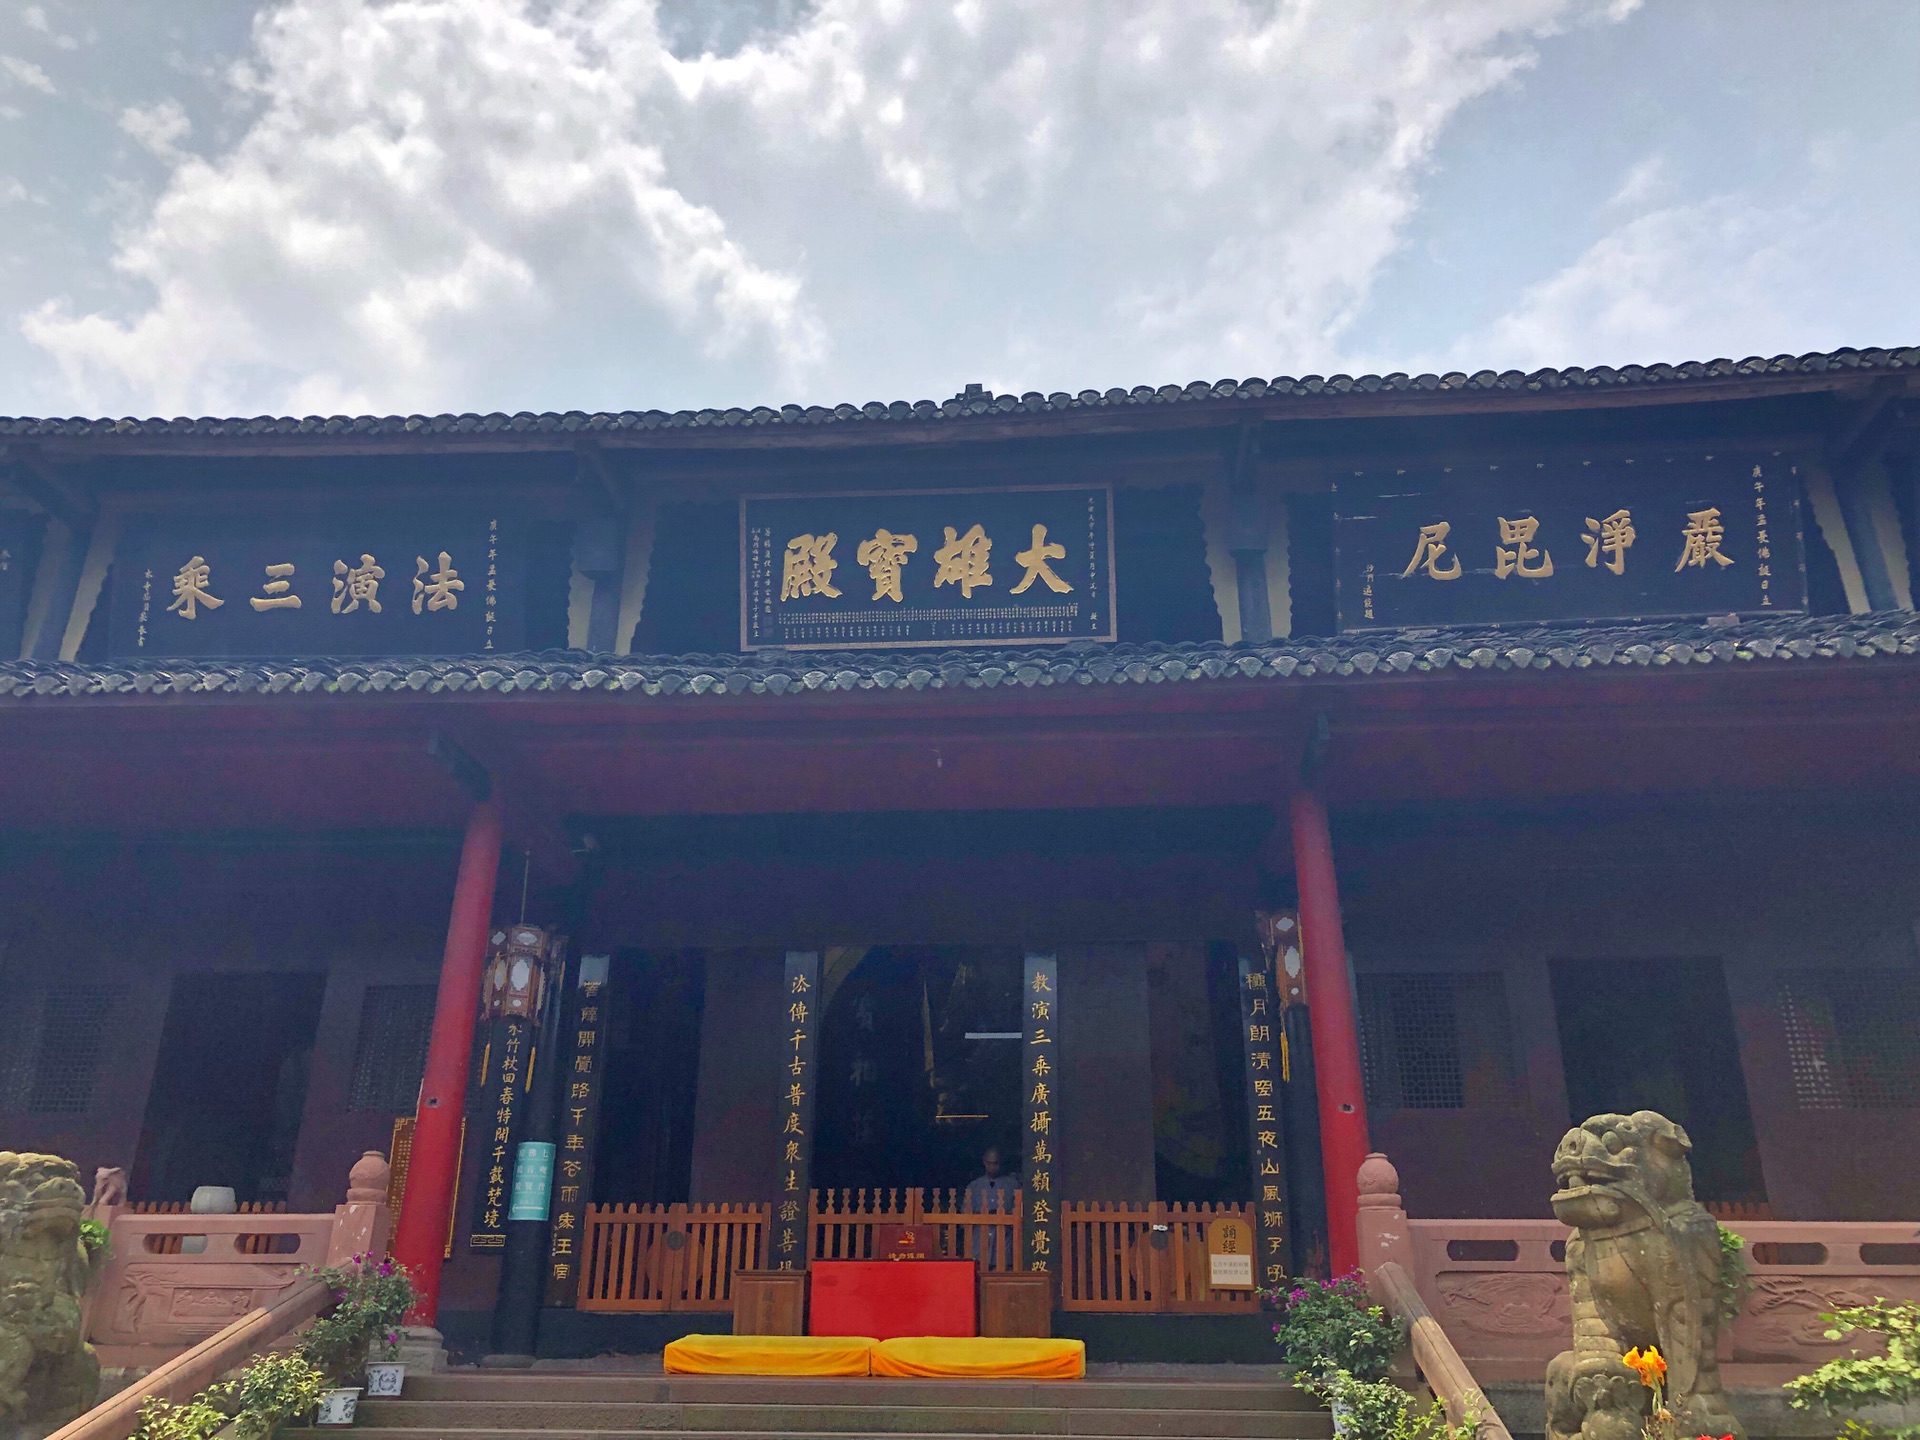 Mount Emei BaoGuo Temple